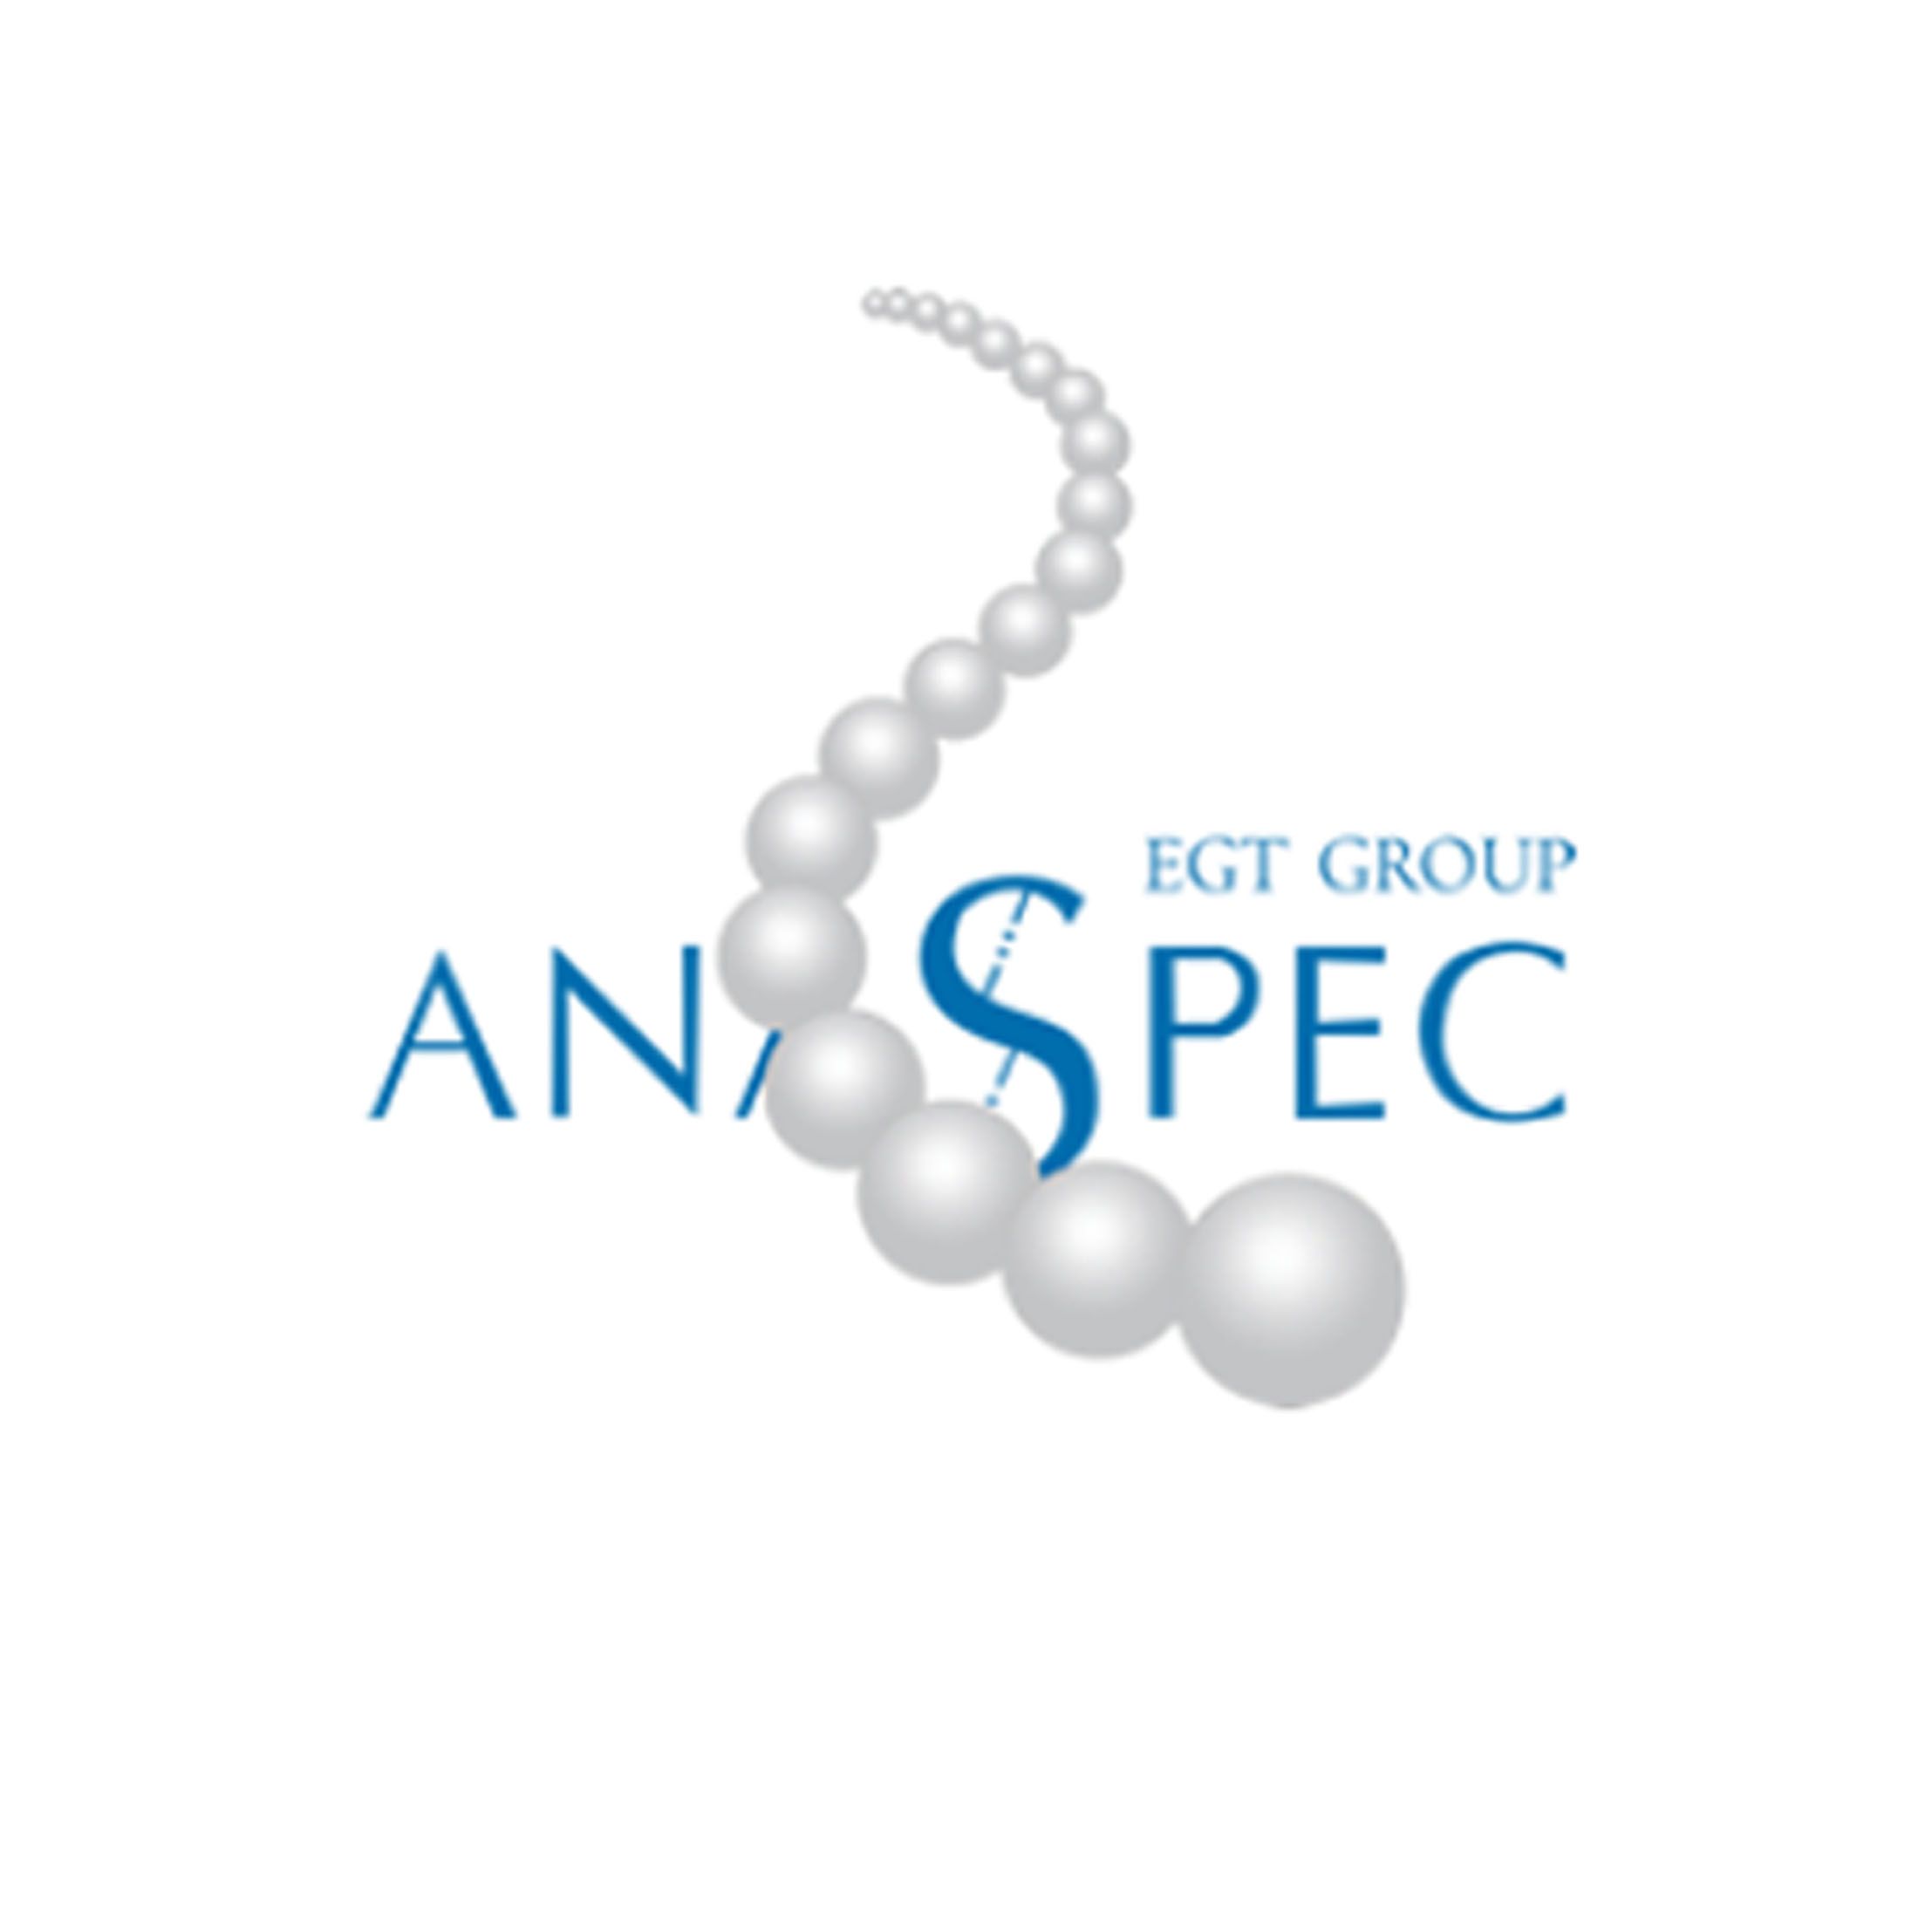 AnaSpec AS-64129-05 Beta-Amyloid (1-42) • HFIP，β淀粉样蛋白（1-42）•HFIP，0.5 mg/1 mg，现货